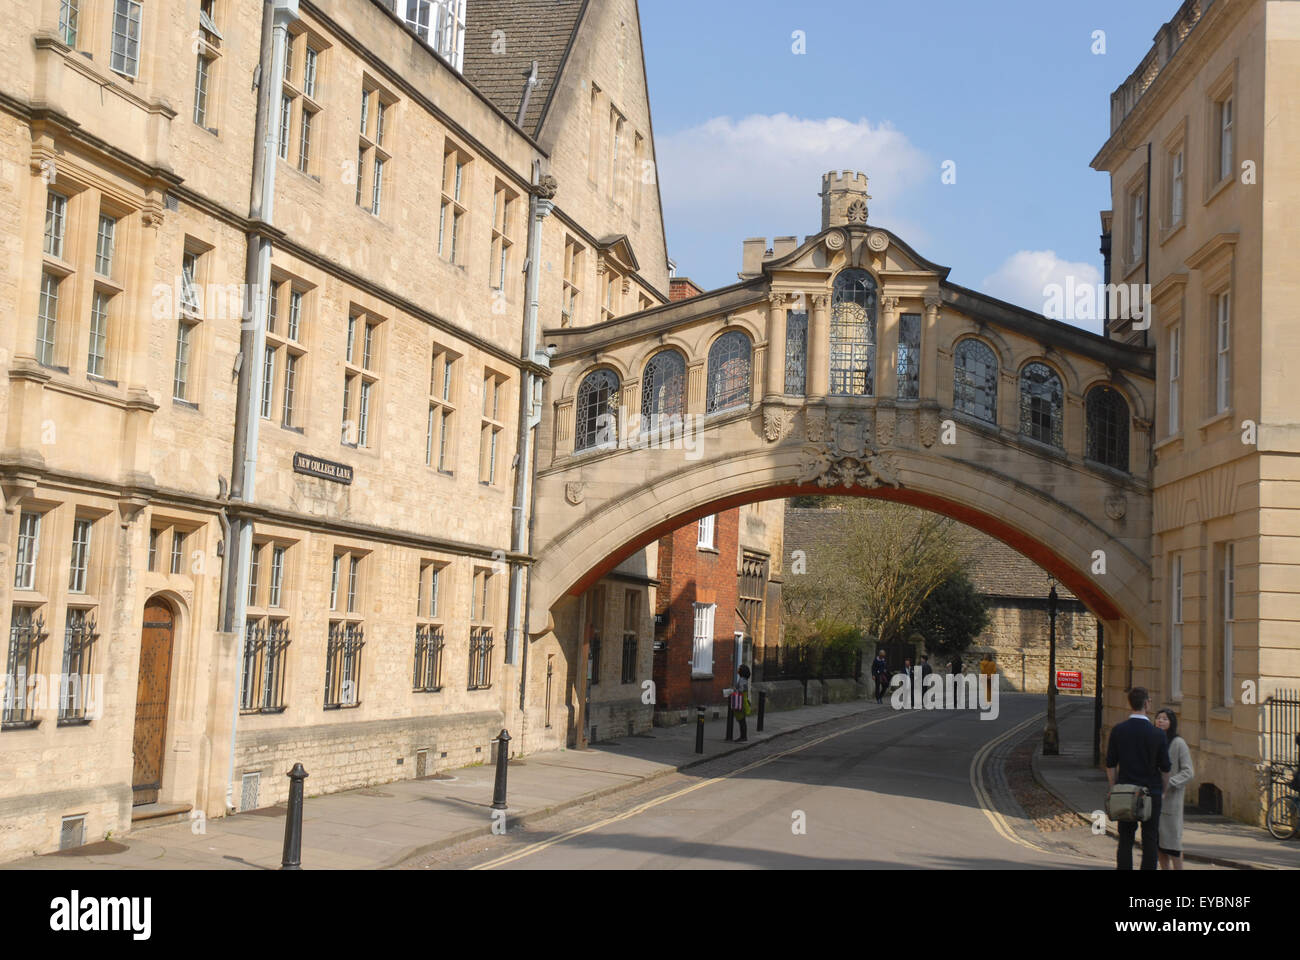 Hertford Bridge, noto come il Ponte dei Sospiri, unisce le due parti di Hertford College di New College Lane, Oxford University. Foto Stock